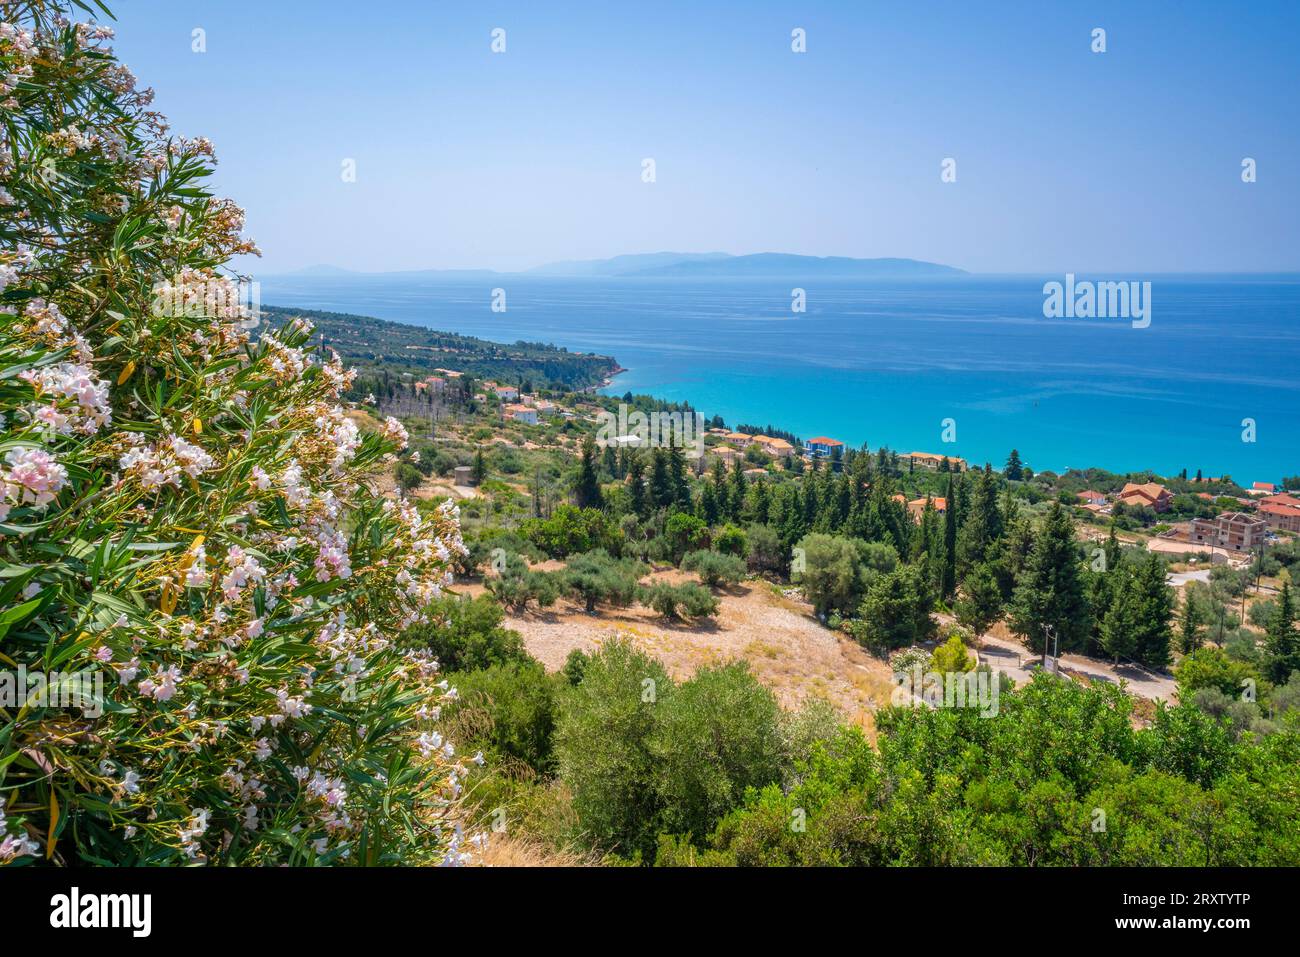 Vue sur les oliveraies et le littoral près de Lourdata, Céphalonie, îles Ioniennes, îles grecques, Grèce, Europe Banque D'Images